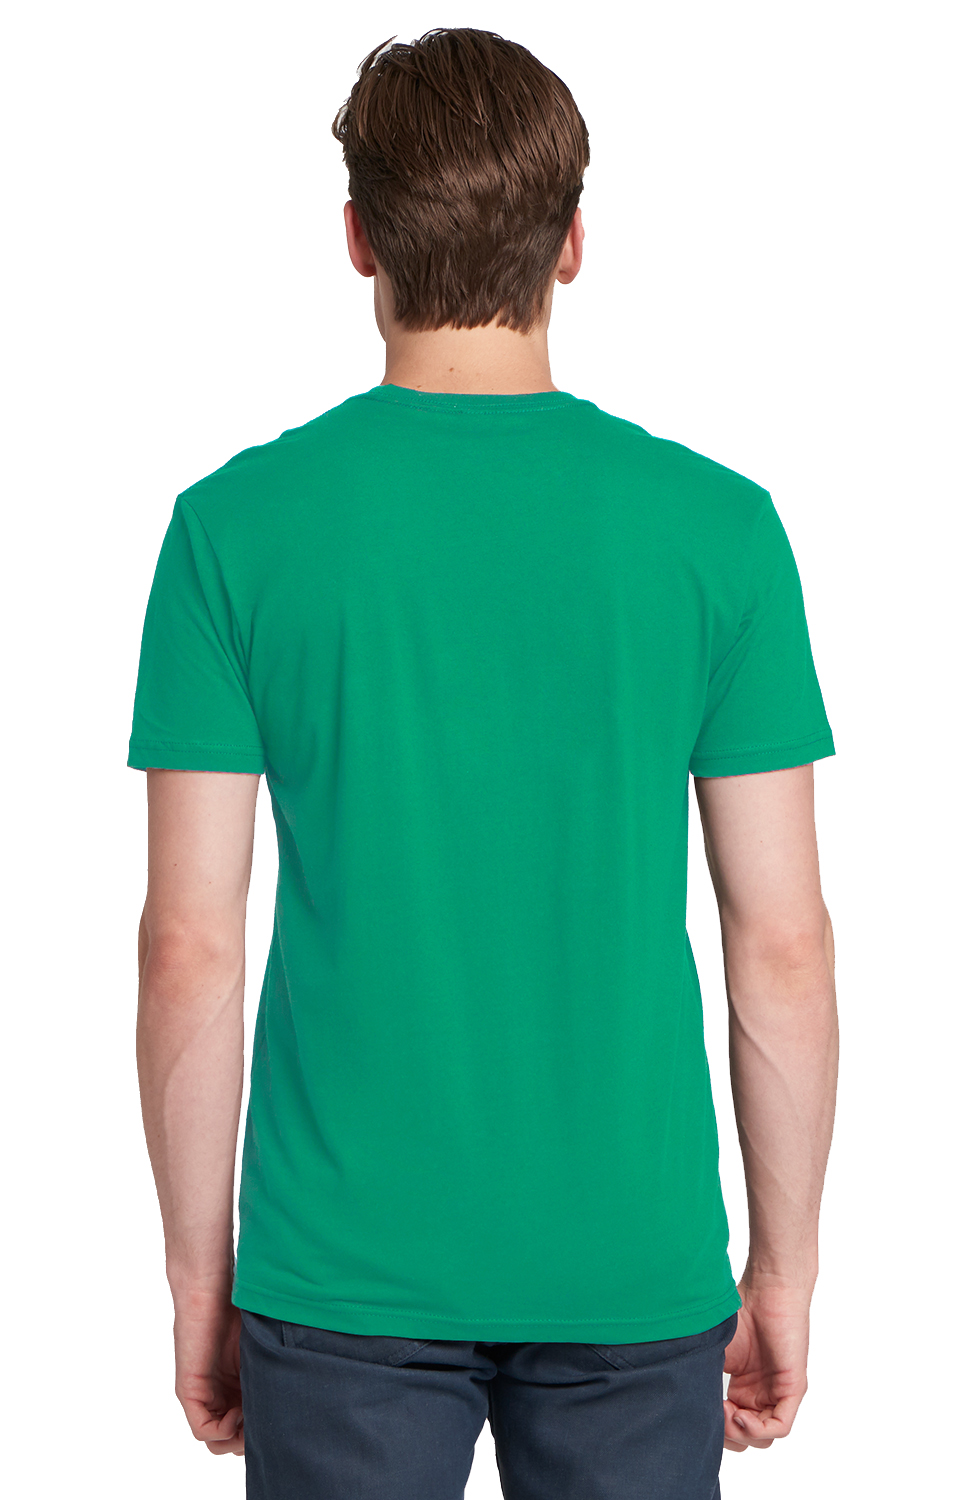 24 New Gildan Irish Green Blank Bulk Wholesale Lot Adult Plain T-Shirts S M L XL 